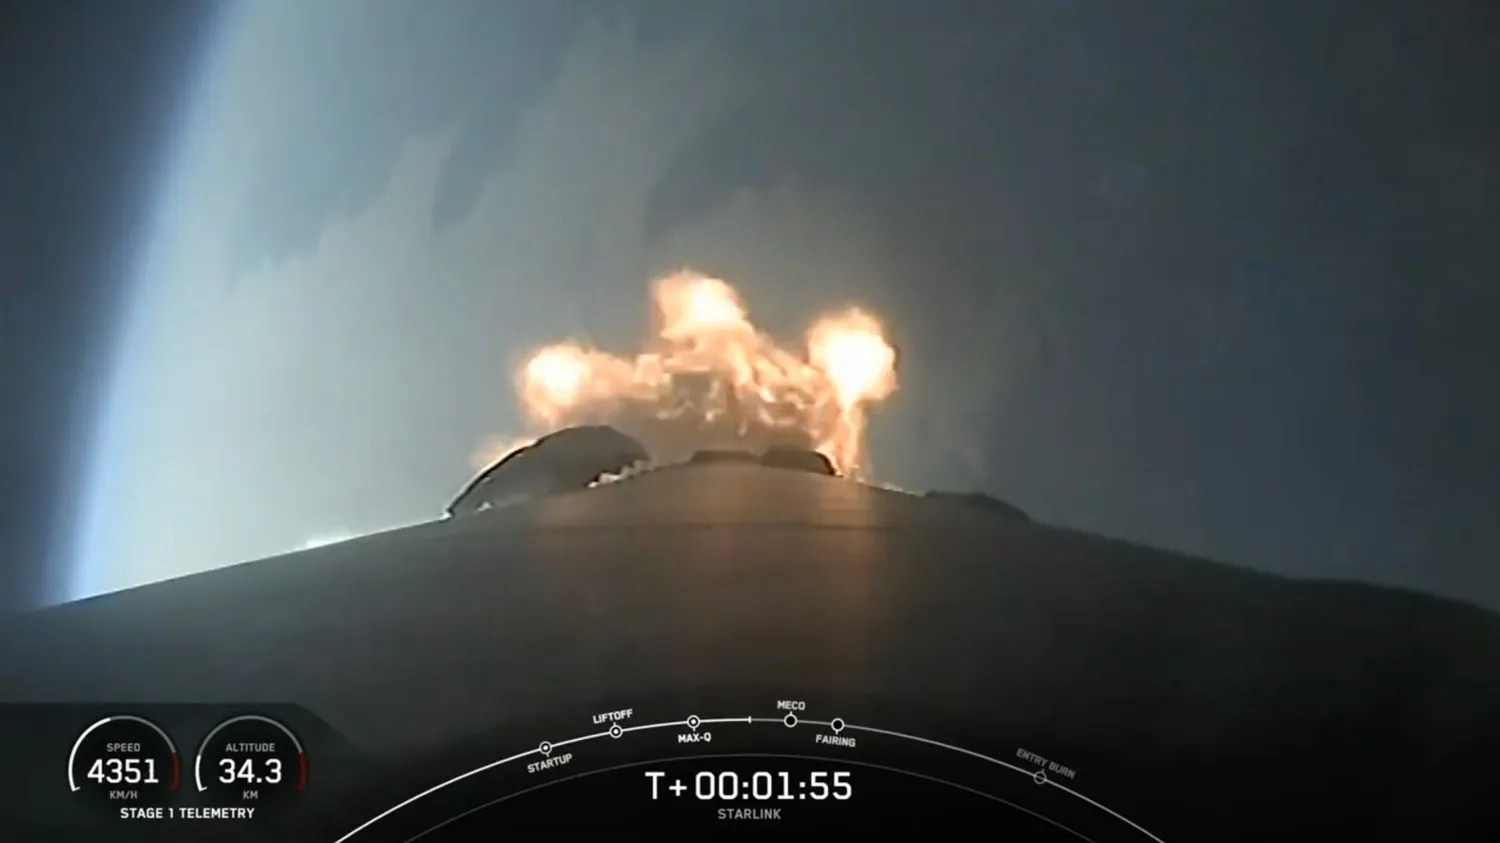 Mehr über den Artikel erfahren FAA untersucht Ausfall der SpaceX Falcon 9 Rakete